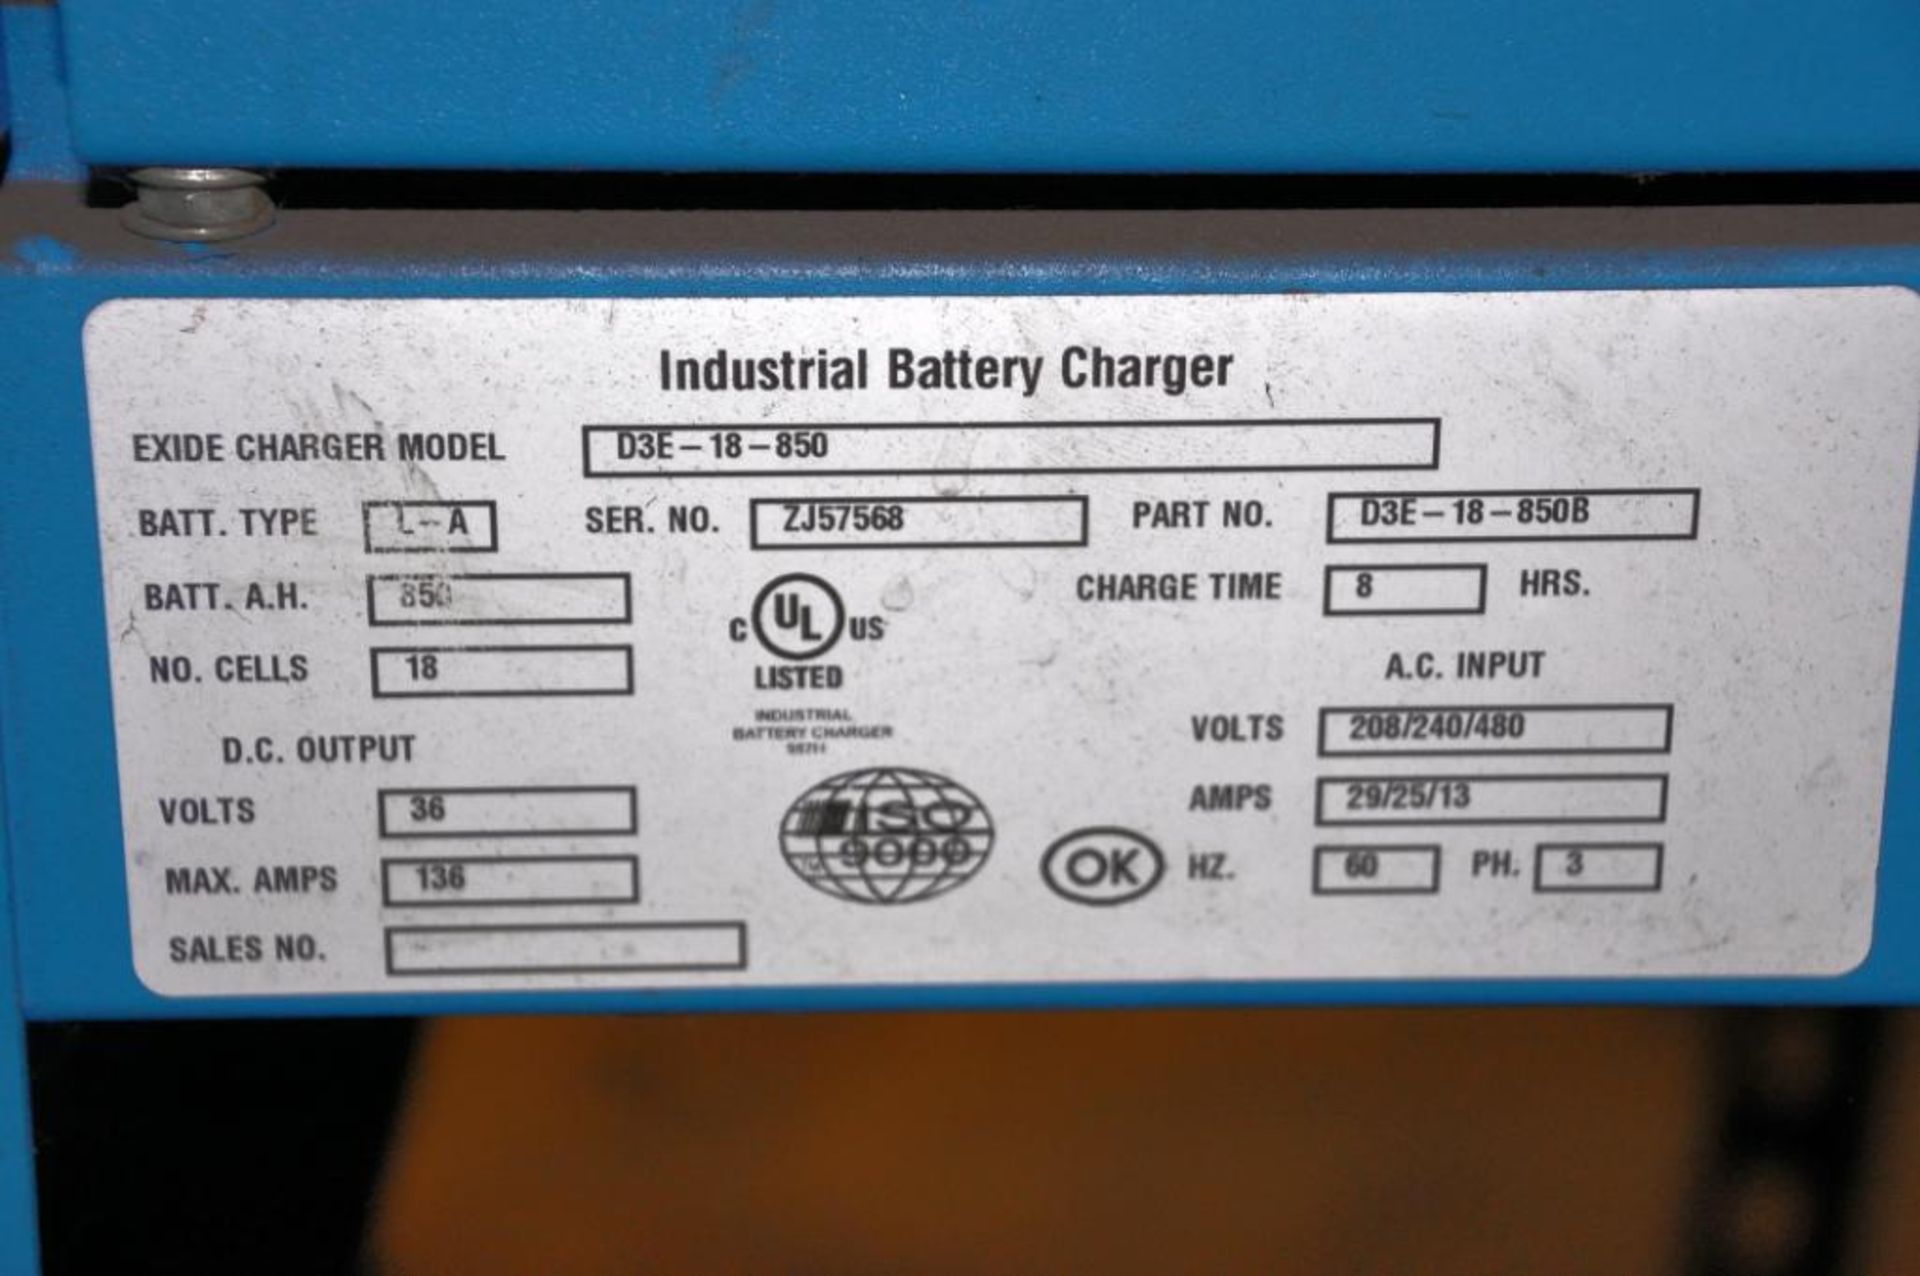 Exide Depth Model D3E-18-850 18-Cell 36V DC Battery Charger, S/N: ZJ57568 - Image 2 of 2